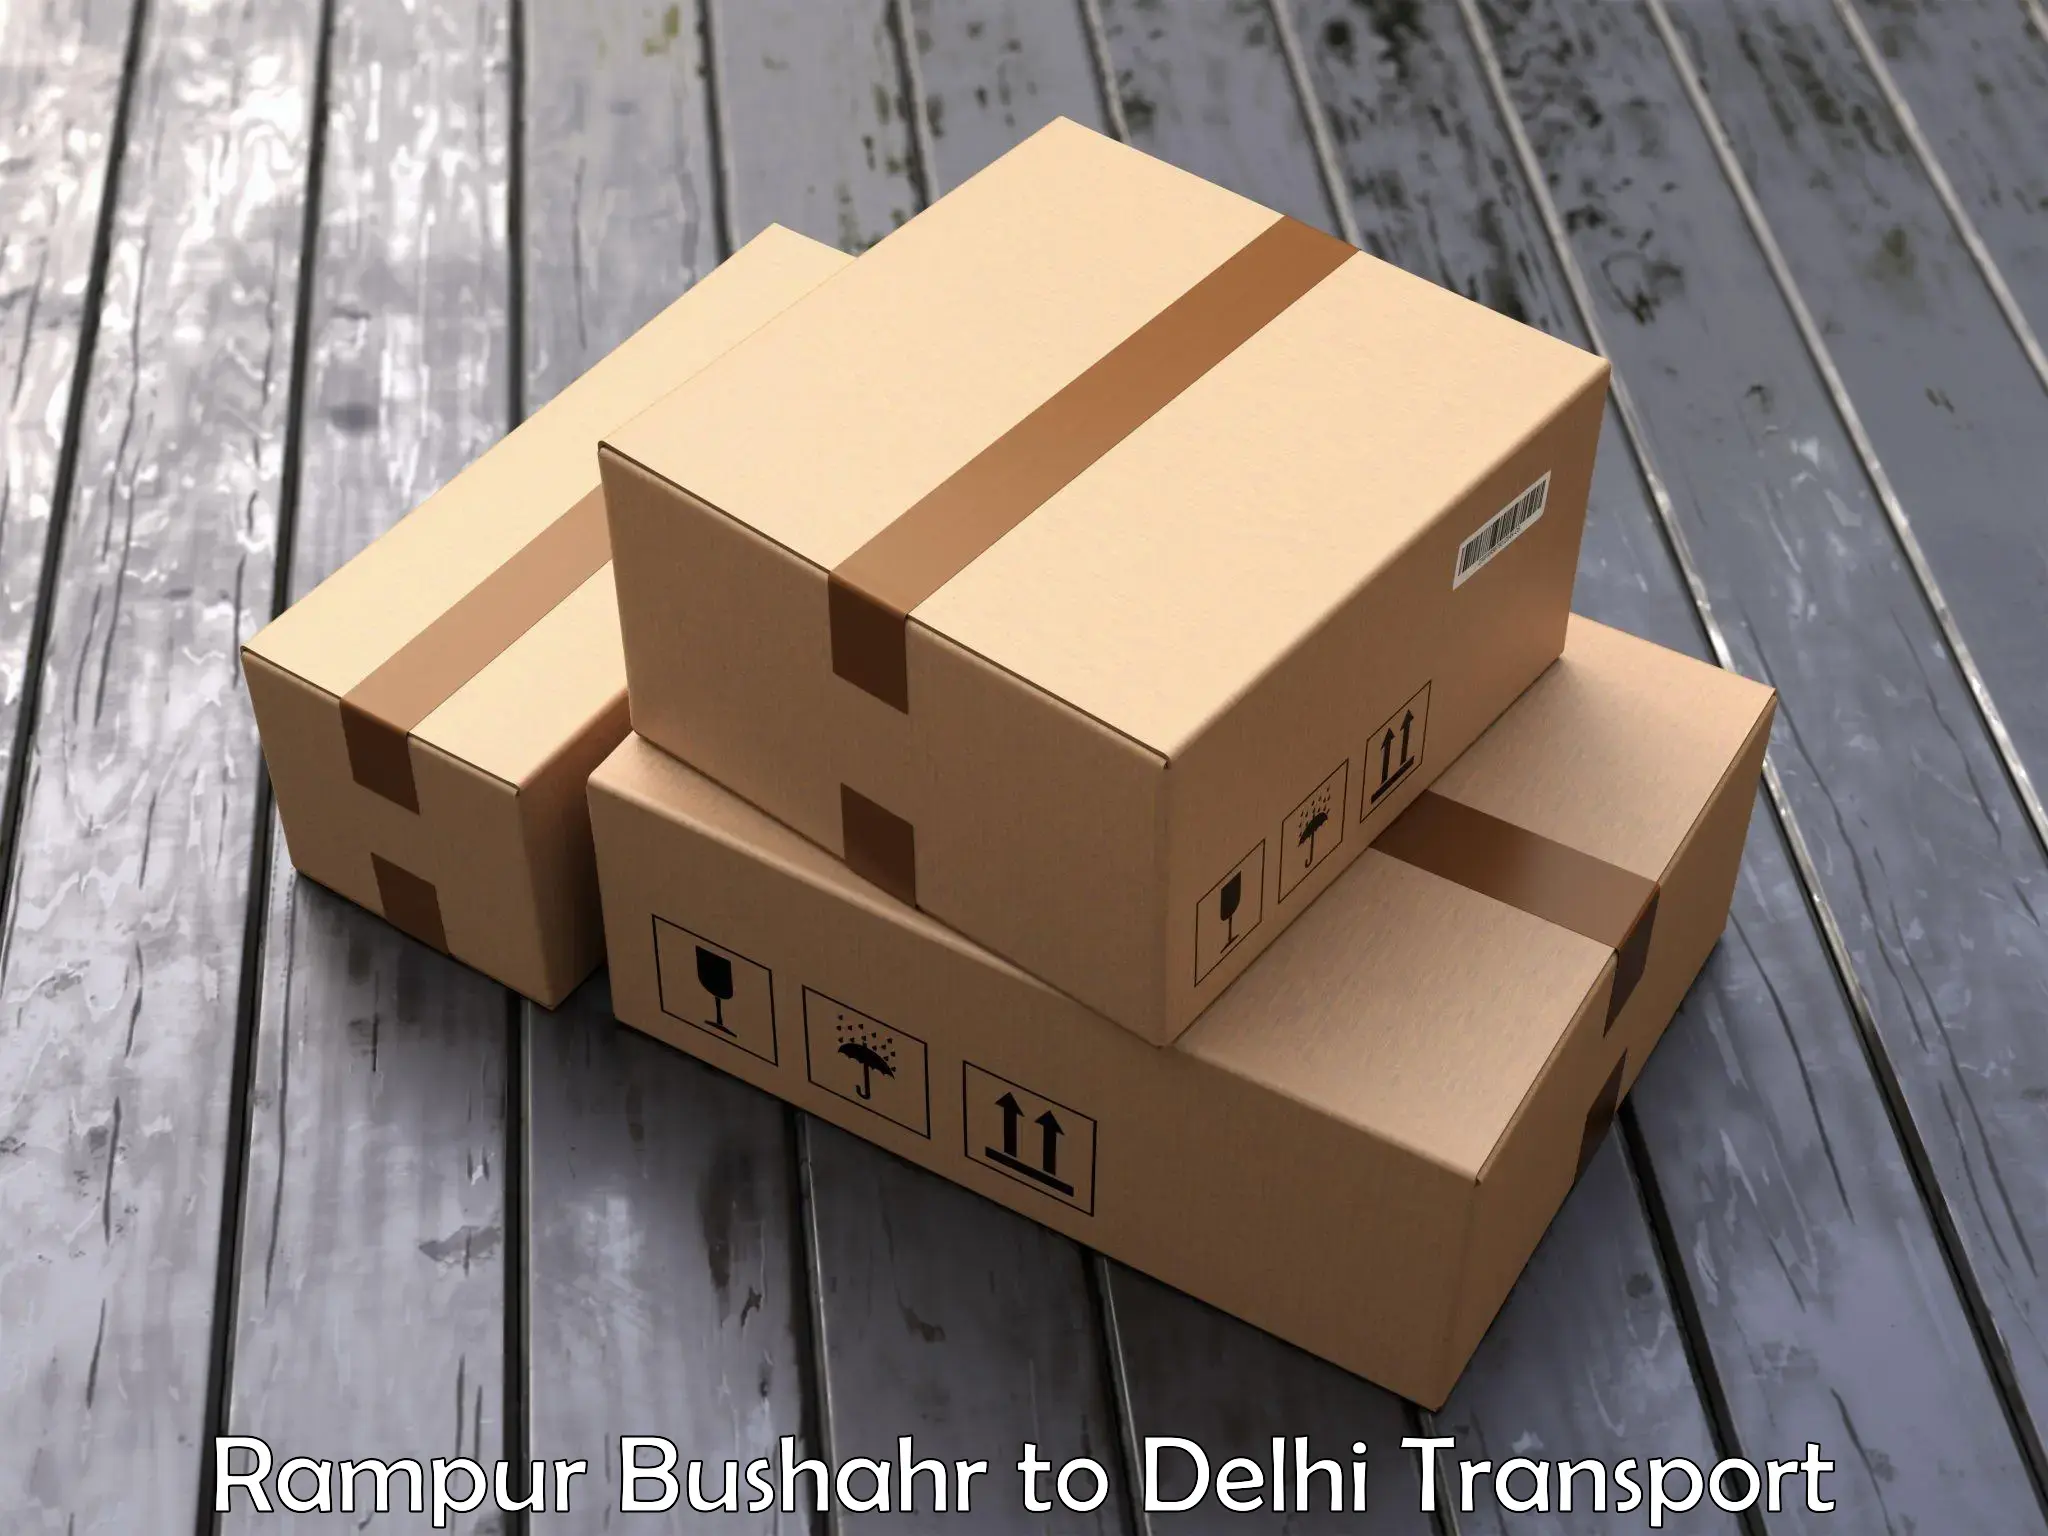 Bike transport service Rampur Bushahr to IIT Delhi